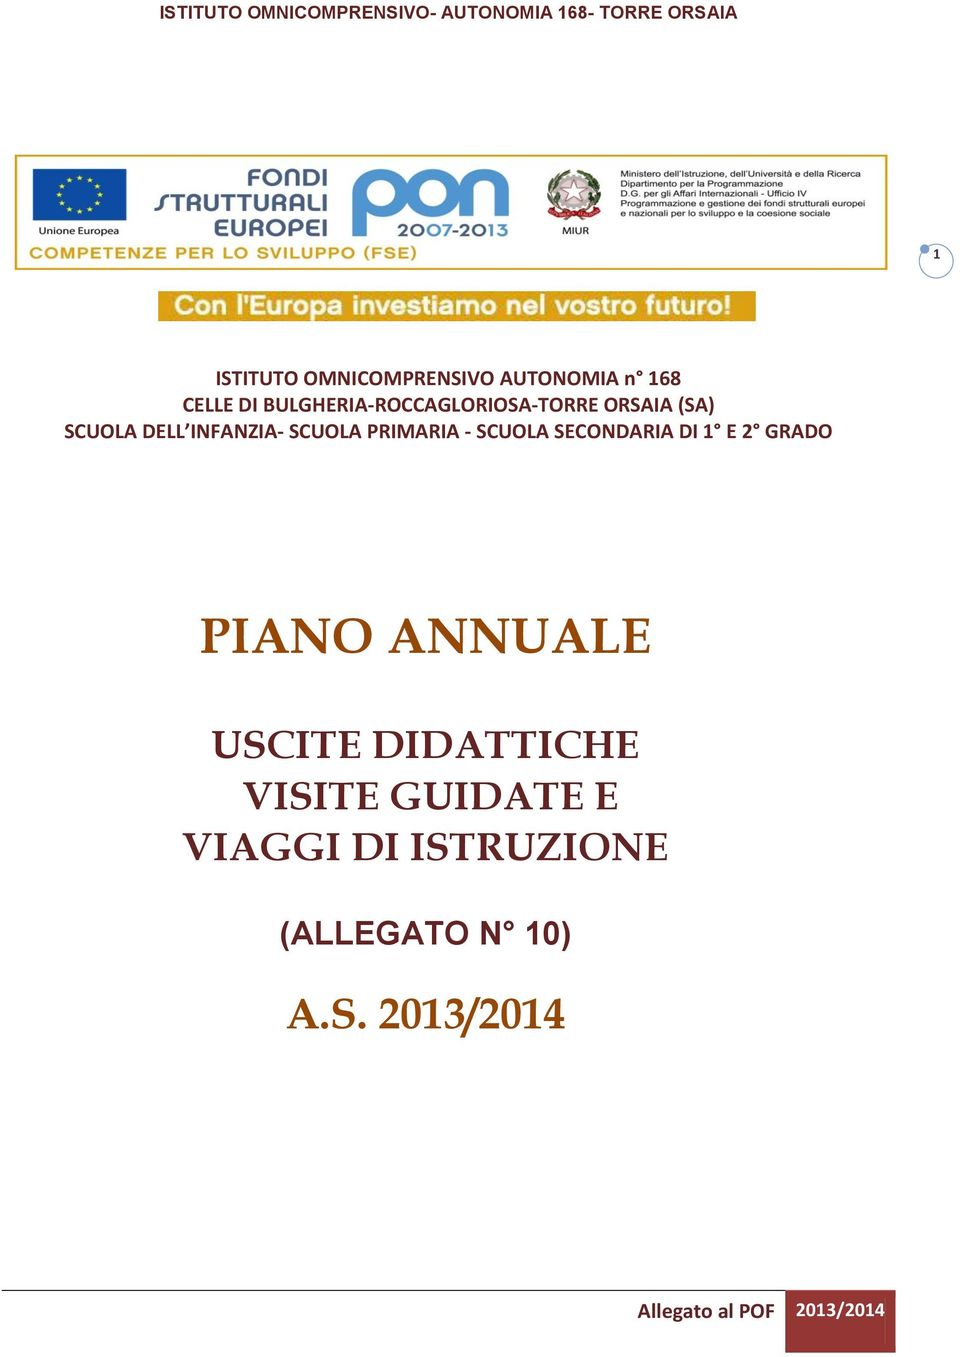 SCUOLA PRIMARIA - SCUOLA SECONDARIA DI 1 E 2 GRADO PIANO ANNUALE